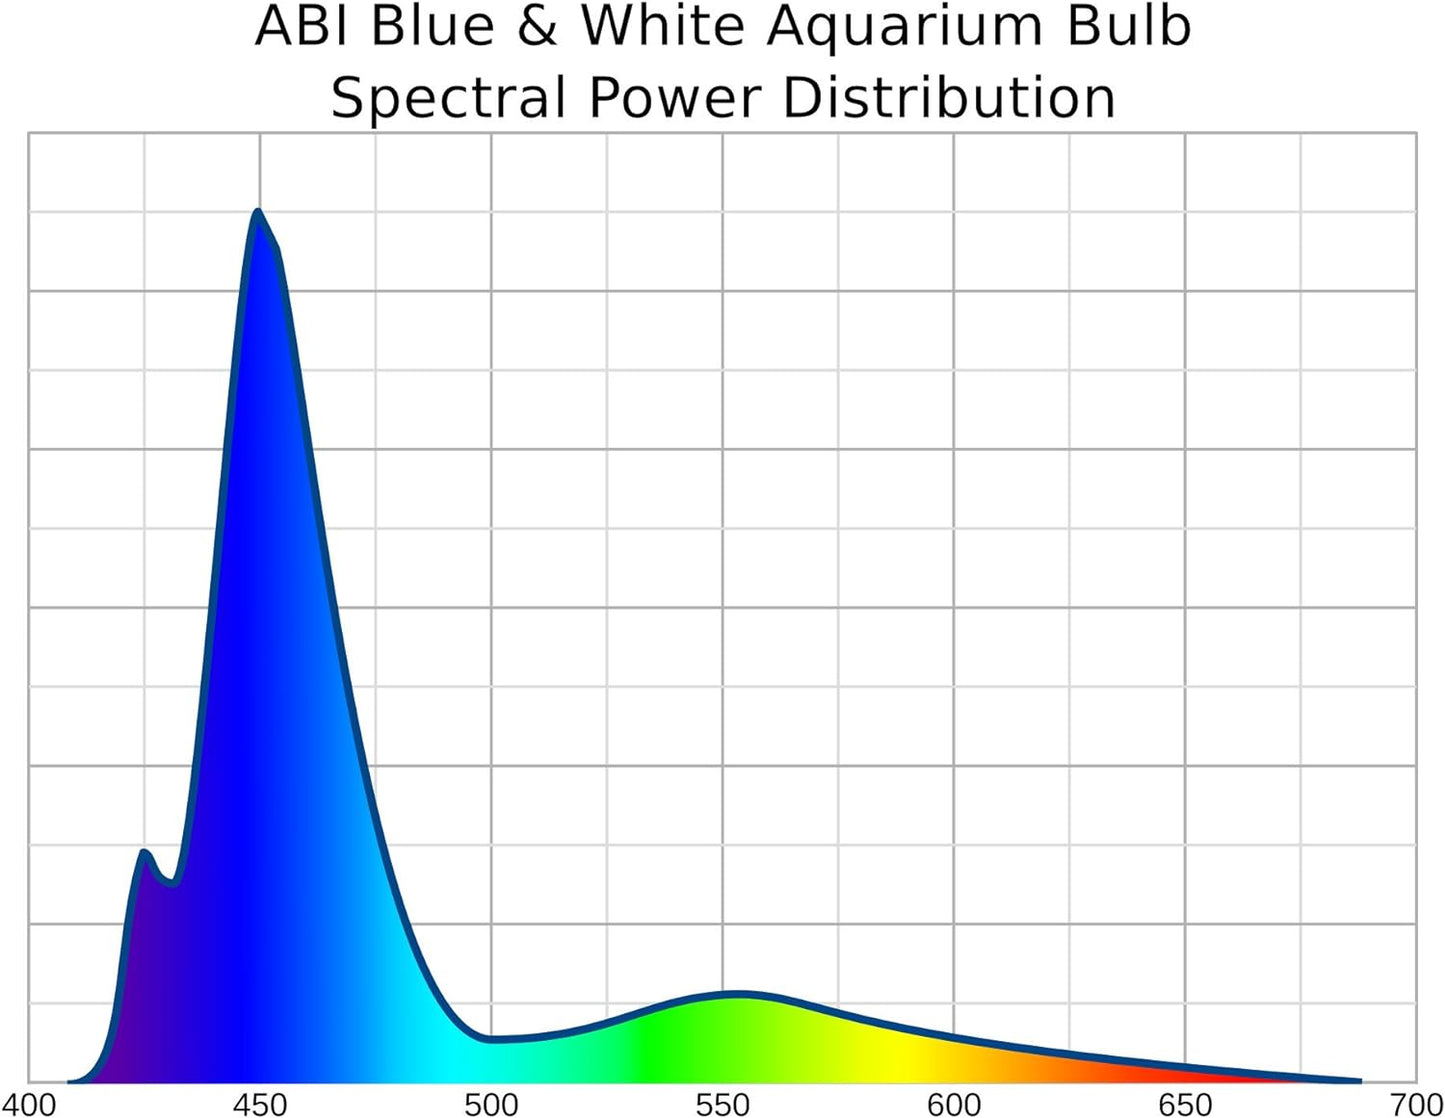 23W Fish Tank Light Bulb PAR38 Blue and White LED Aquarium Light Bulb